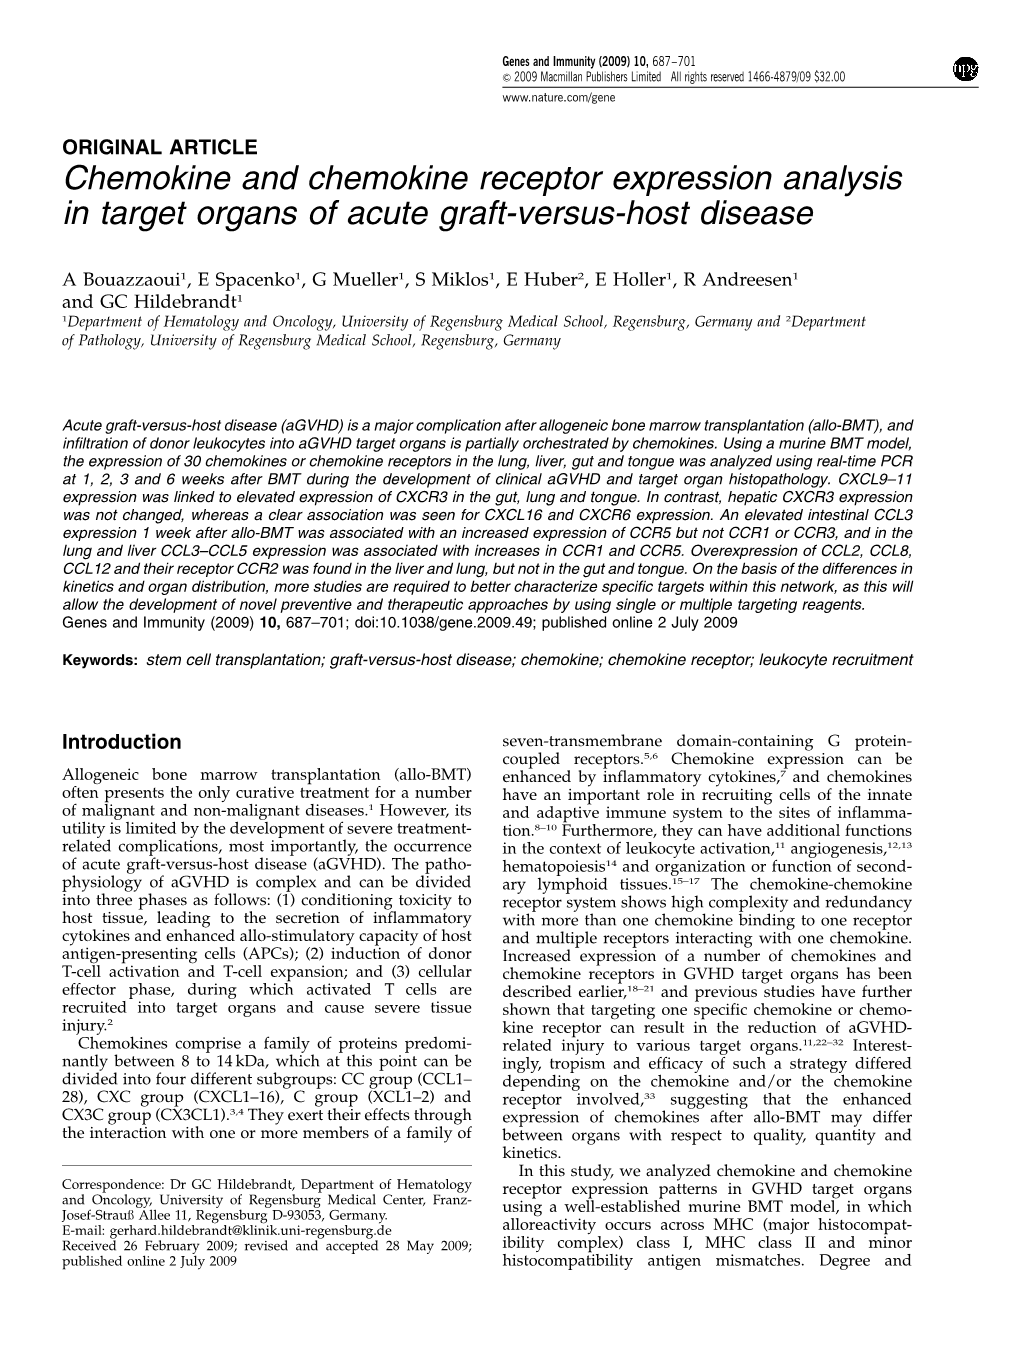 Chemokine and Chemokine Receptor Expression Analysis in Target Organs of Acute Graft-Versus-Host Disease